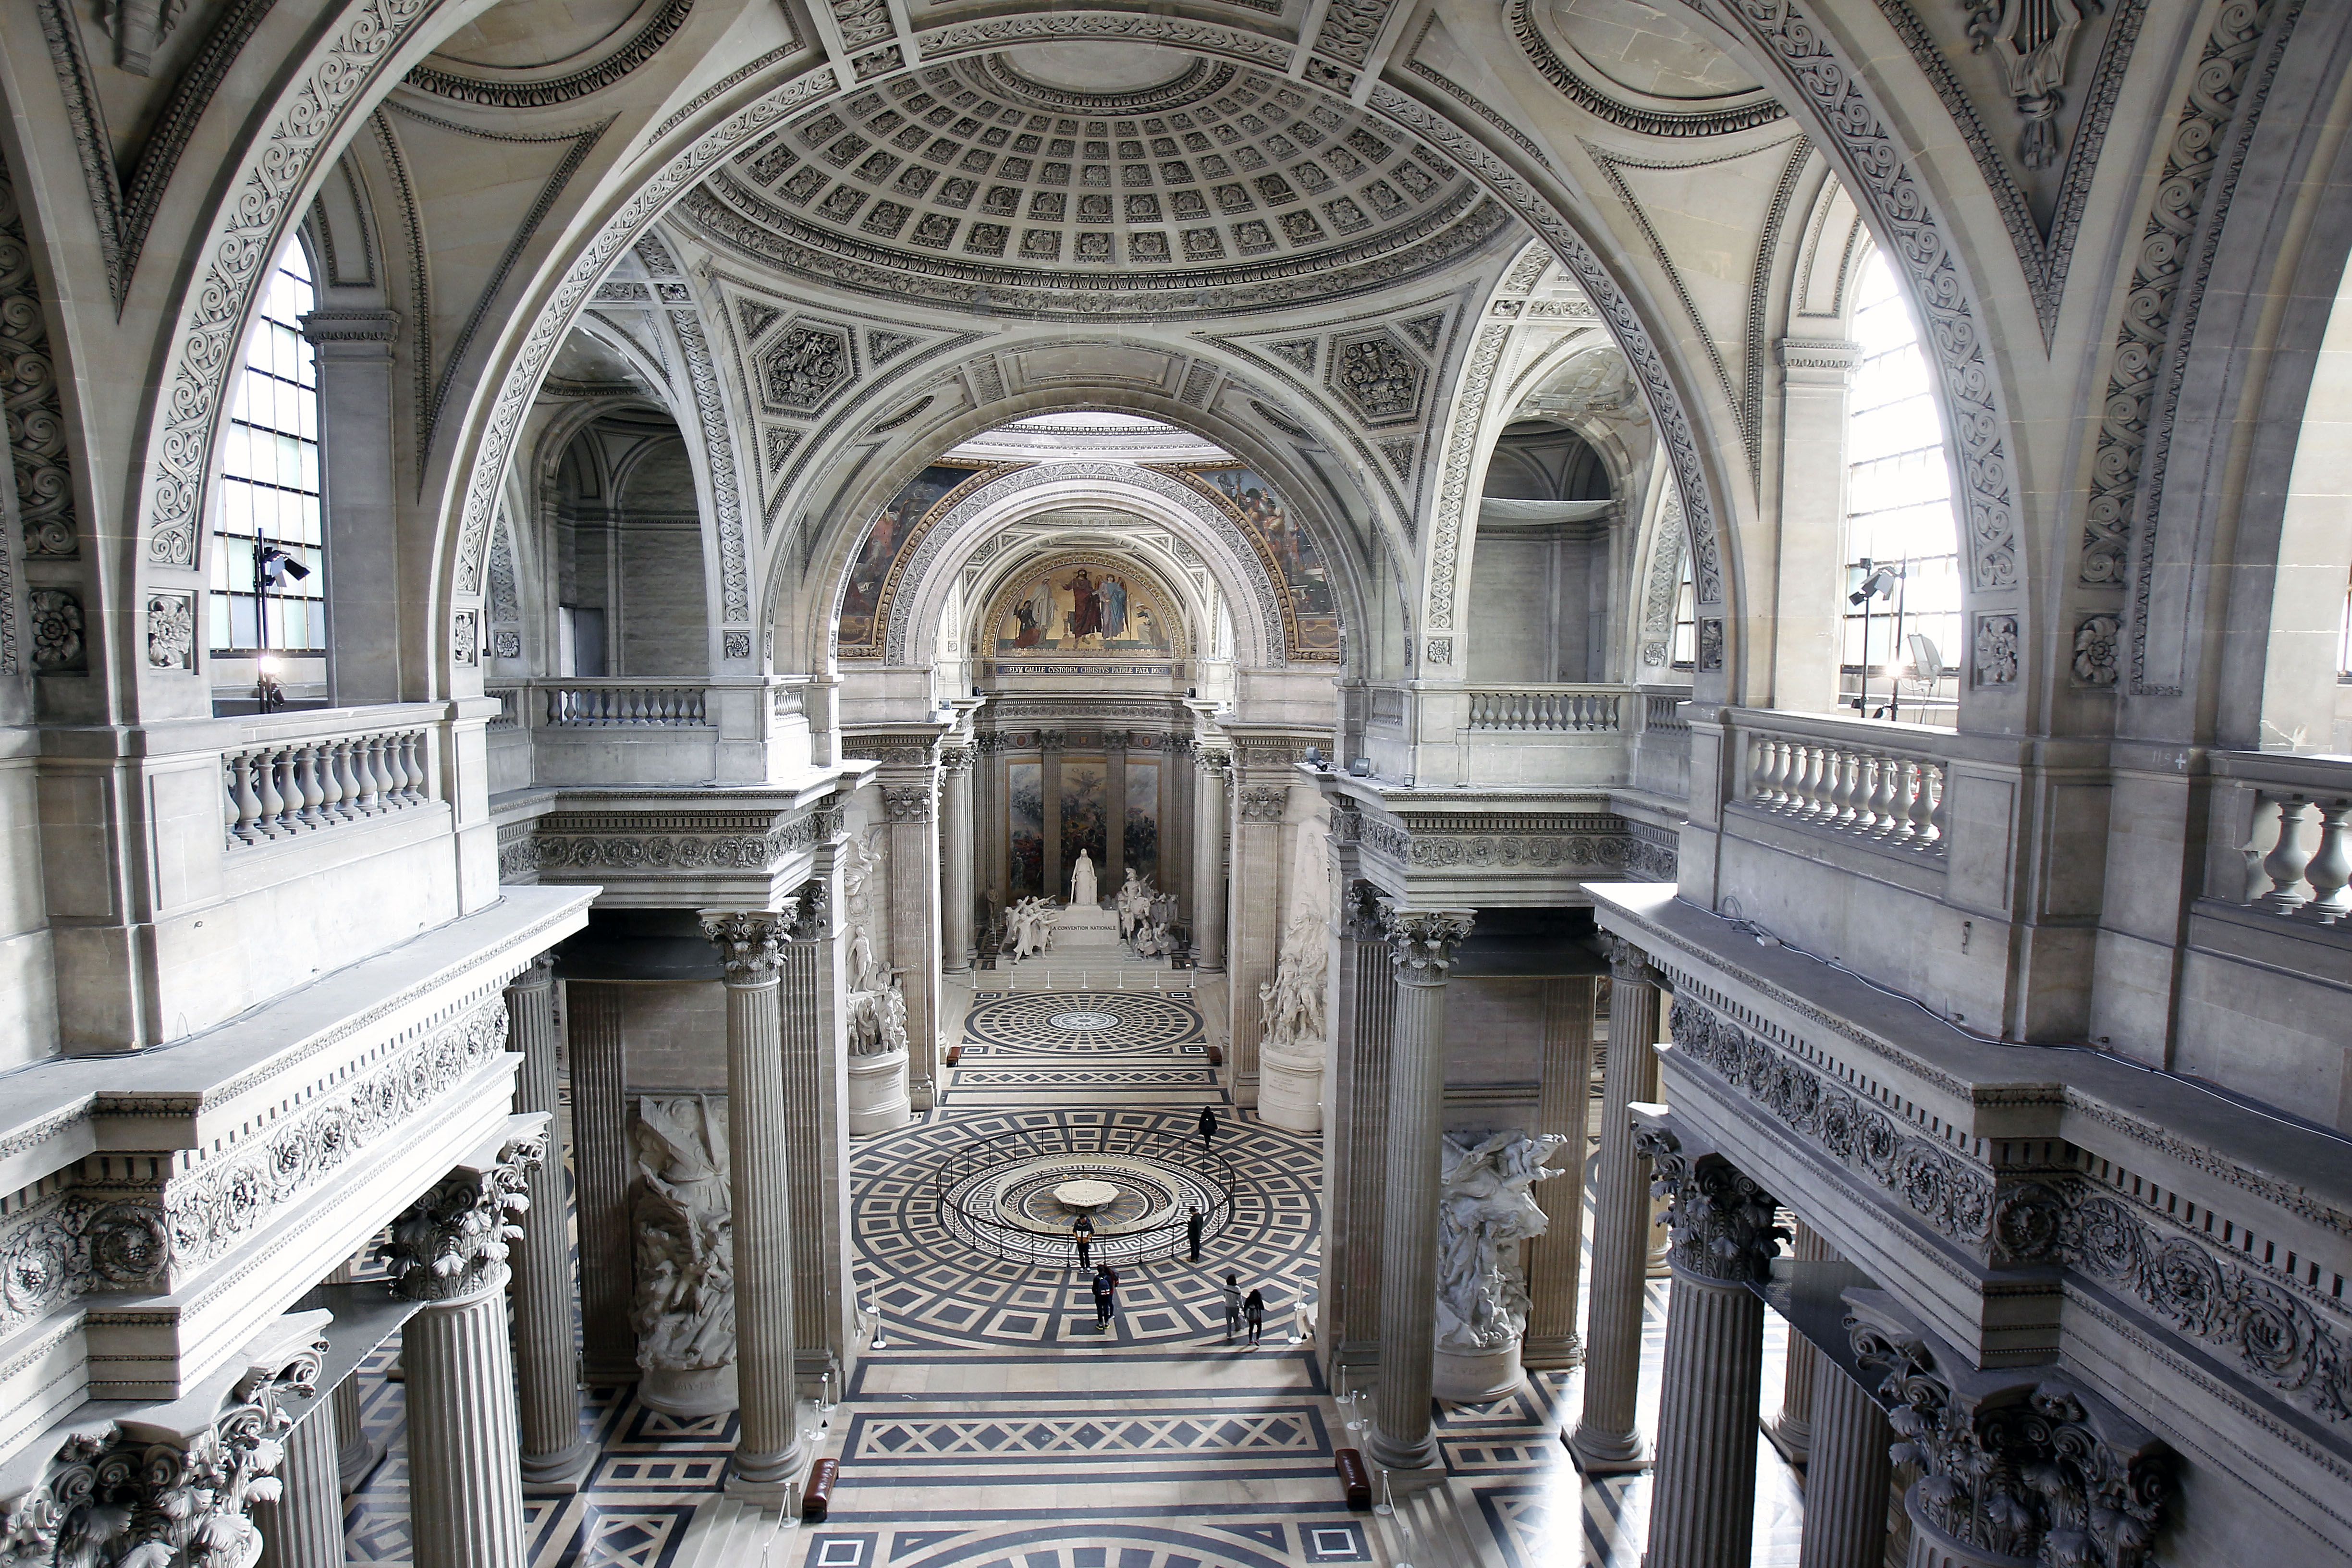 Neoclassical architecture - Wikipedia